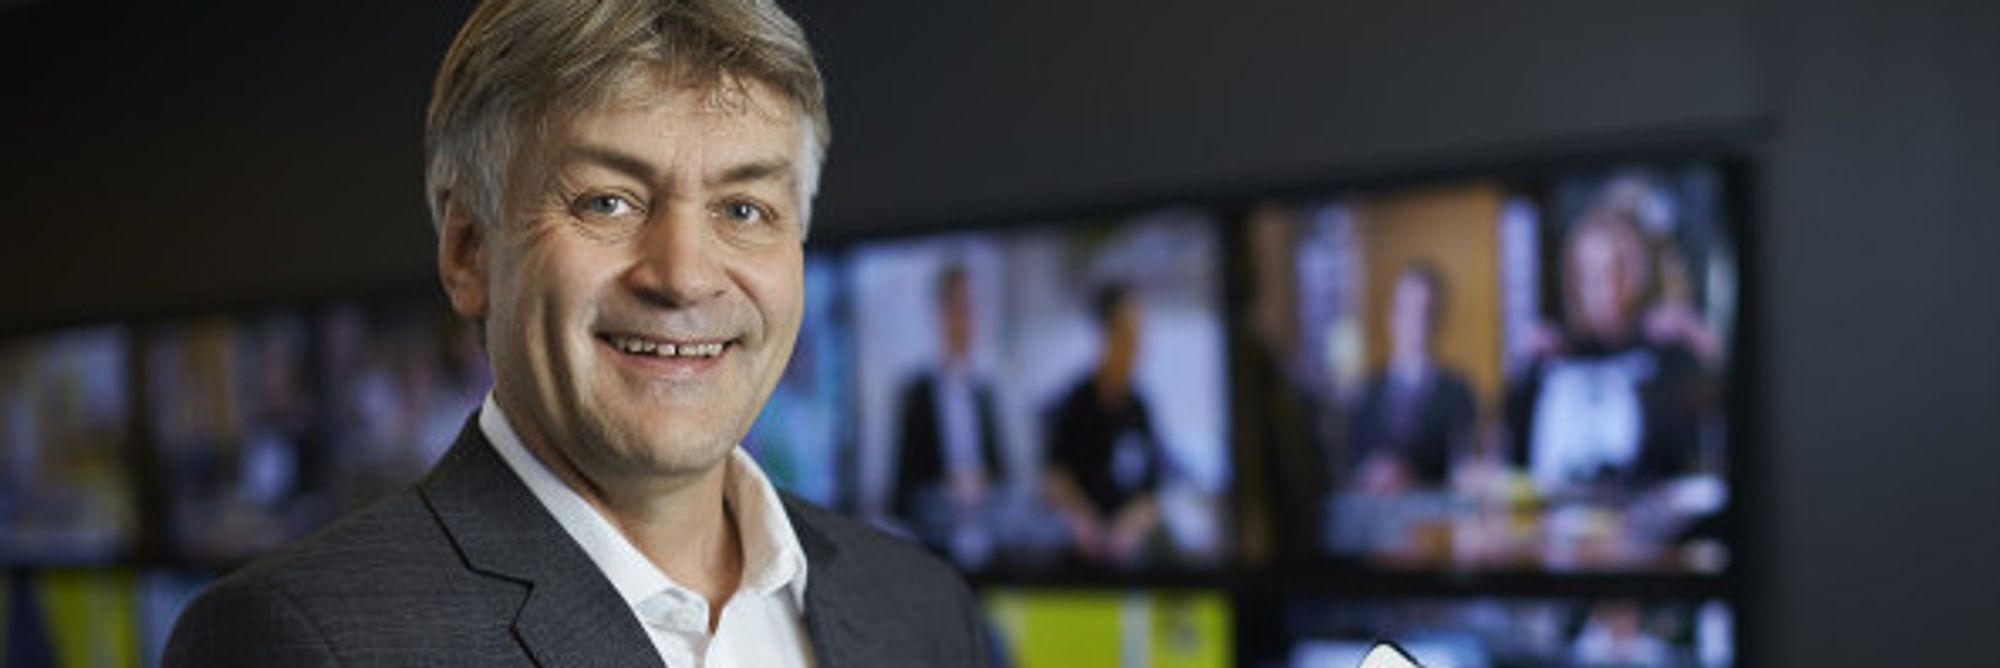 TDC/Get-sjef Gunnar Evensen ønsker å benytte kunderelasjonen til 1,3 millioner nordmenn for å tilby også mobiltelefoni, i tillegg til kabel-tv, bredbånd og fasttelefoni.